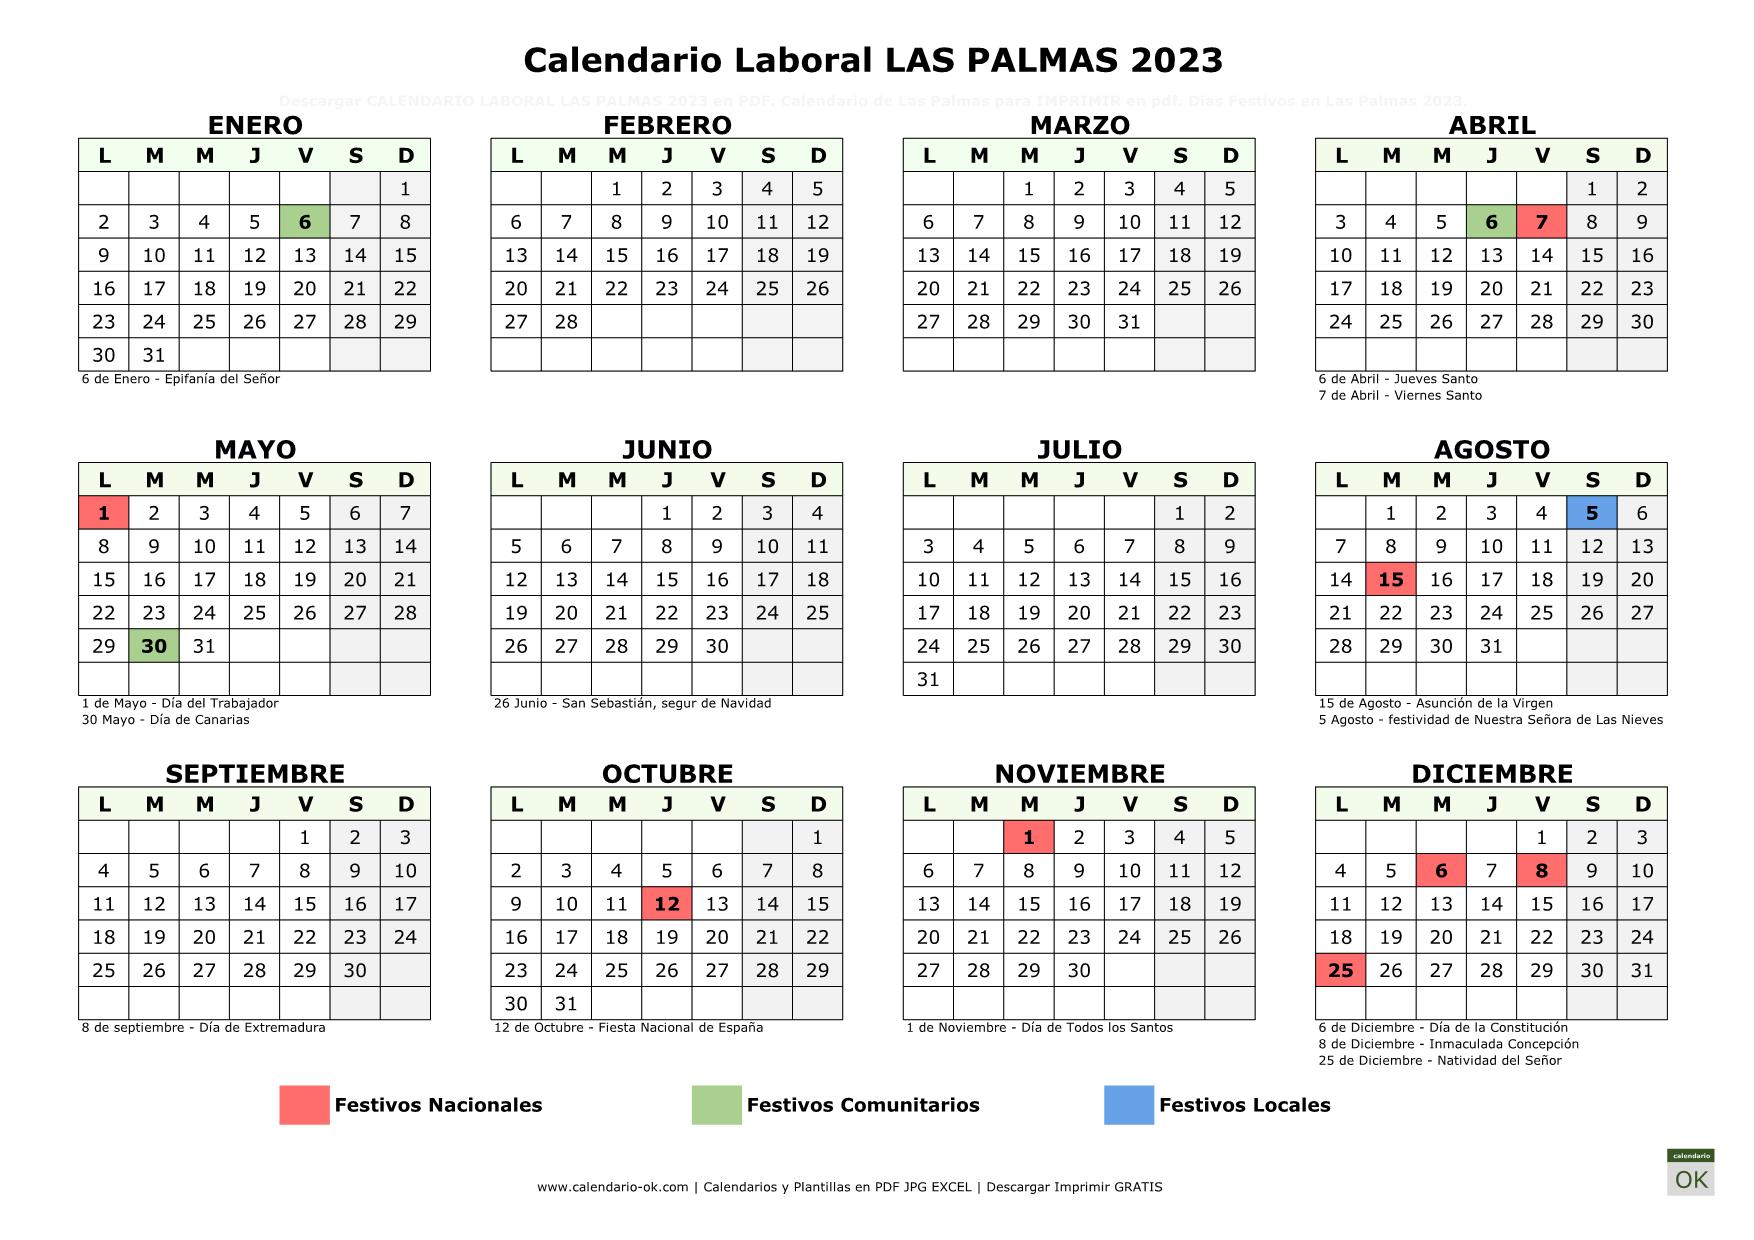 Calendario Laboral Las Palmas 2023 horizontal